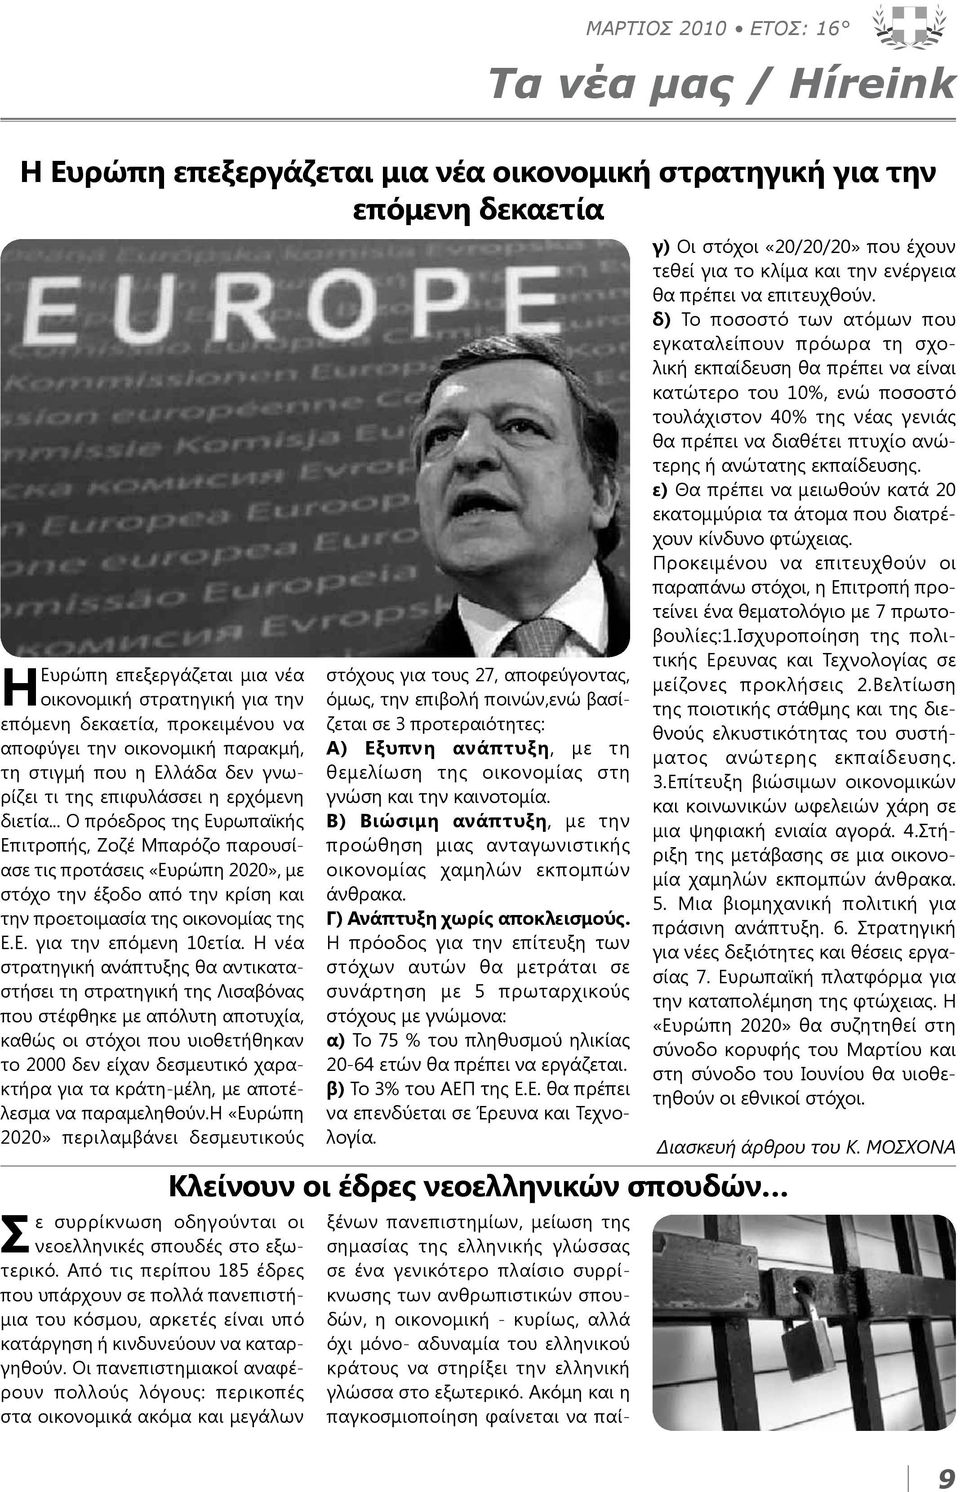 .. Ο πρόεδρος της Ευρωπαϊκής Επιτροπής, Ζοζέ Μπαρόζο παρουσίασε τις προτάσεις «Ευρώπη 2020», με στόχο την έξοδο από την κρίση και την προετοιμασία της οικονομίας της Ε.Ε. για την επόμενη 10ετία.